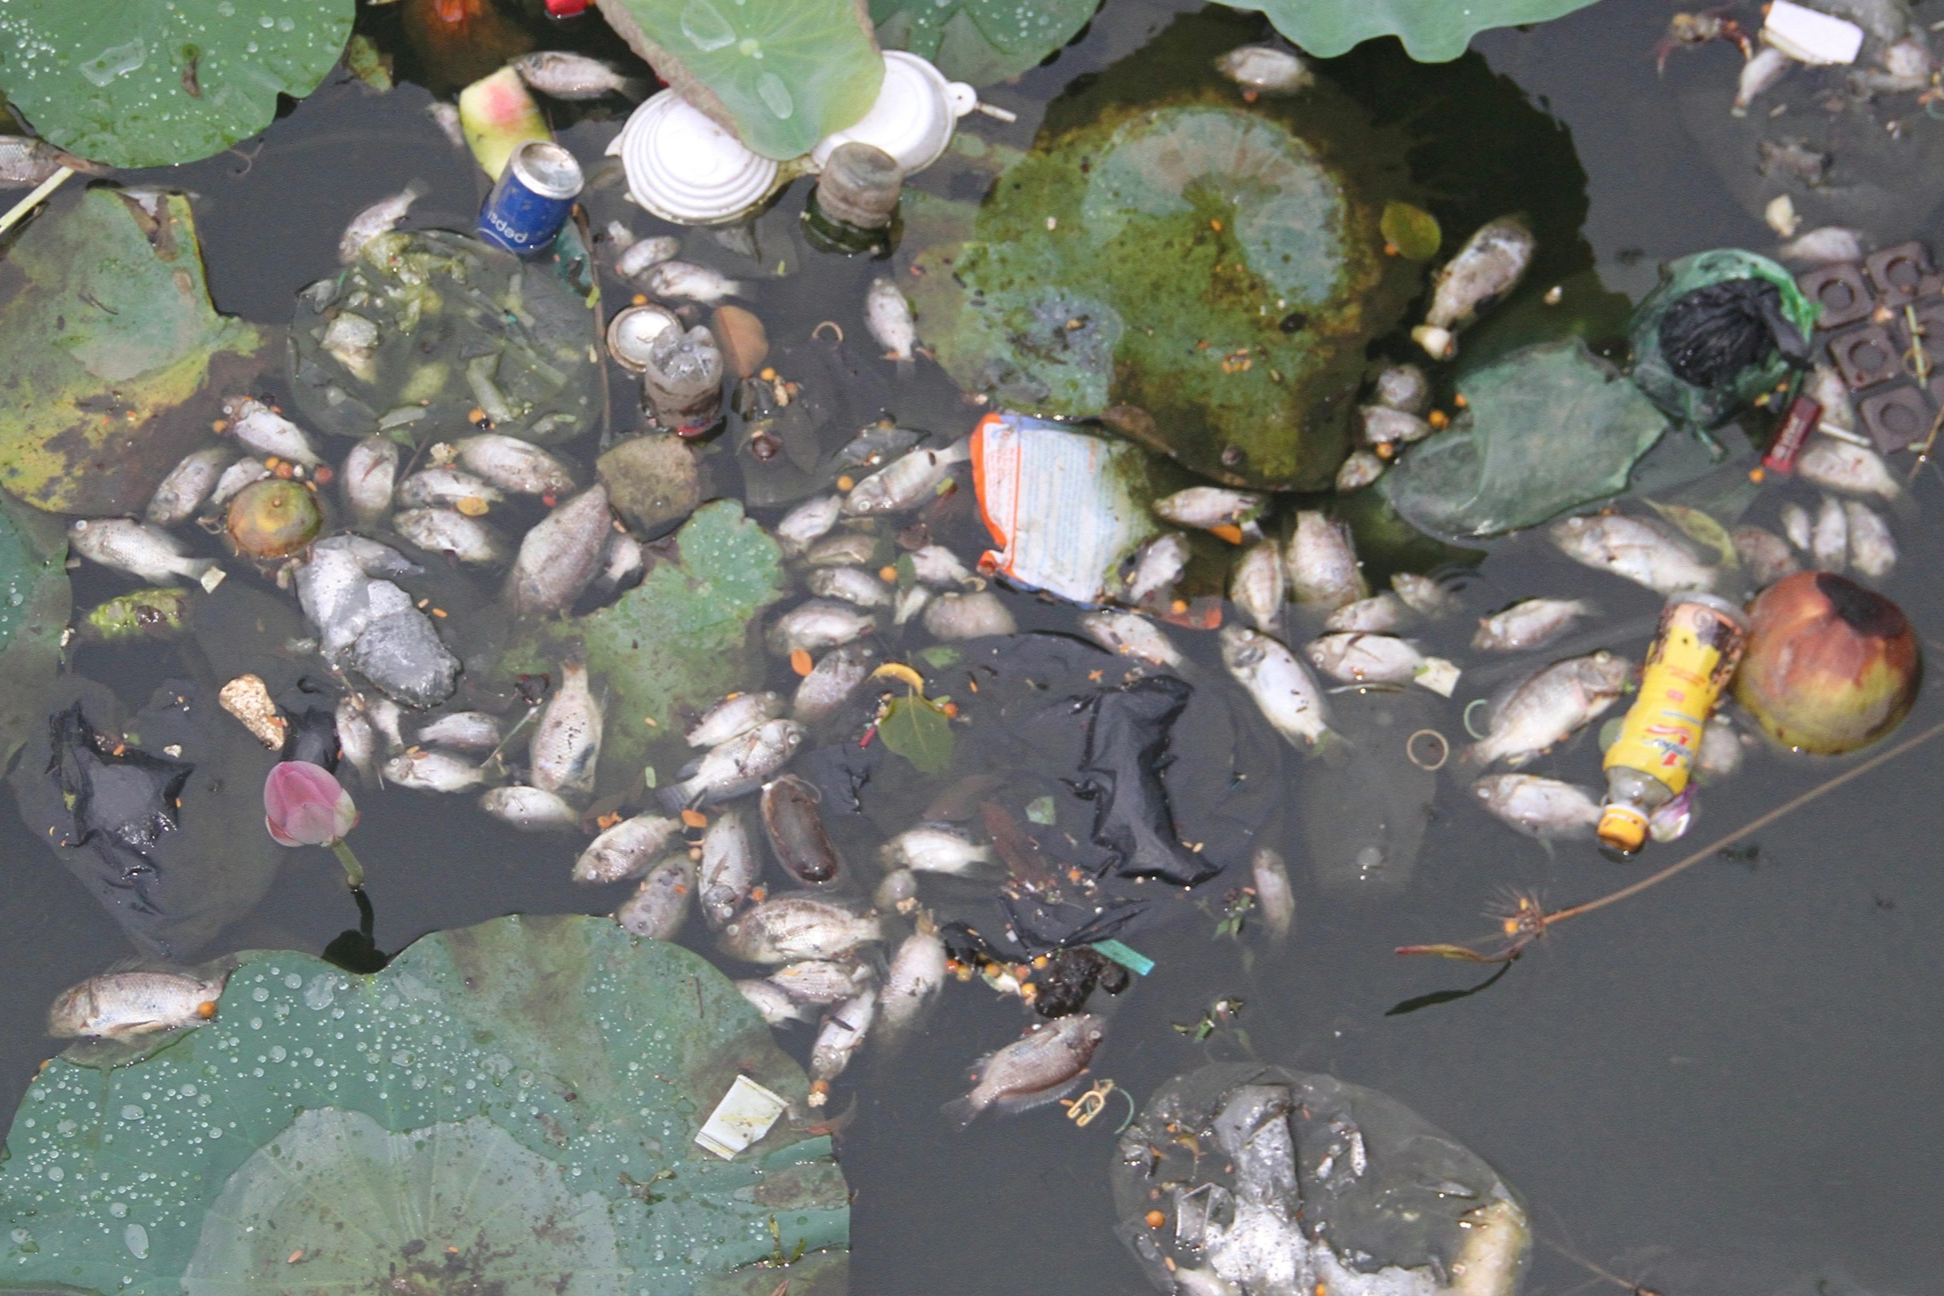 Cá chết bốc mùi hôi thối ở hồ sinh thái tại Quy Nhơn do bị sốc nhiệt? - 1